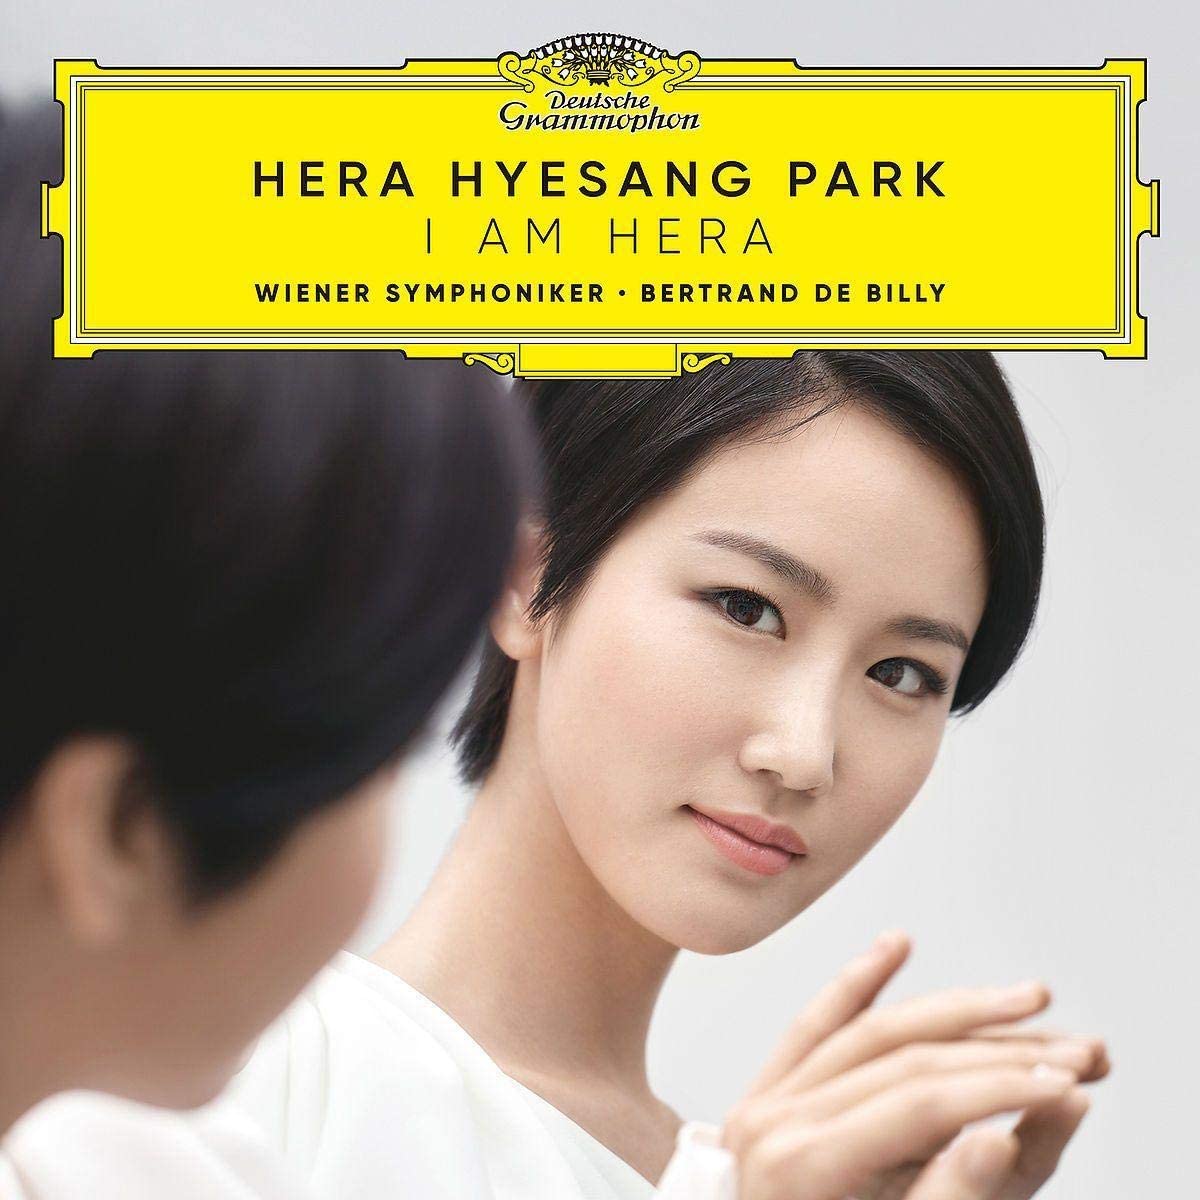 I Am Hera | Hera Hyesang Park image0